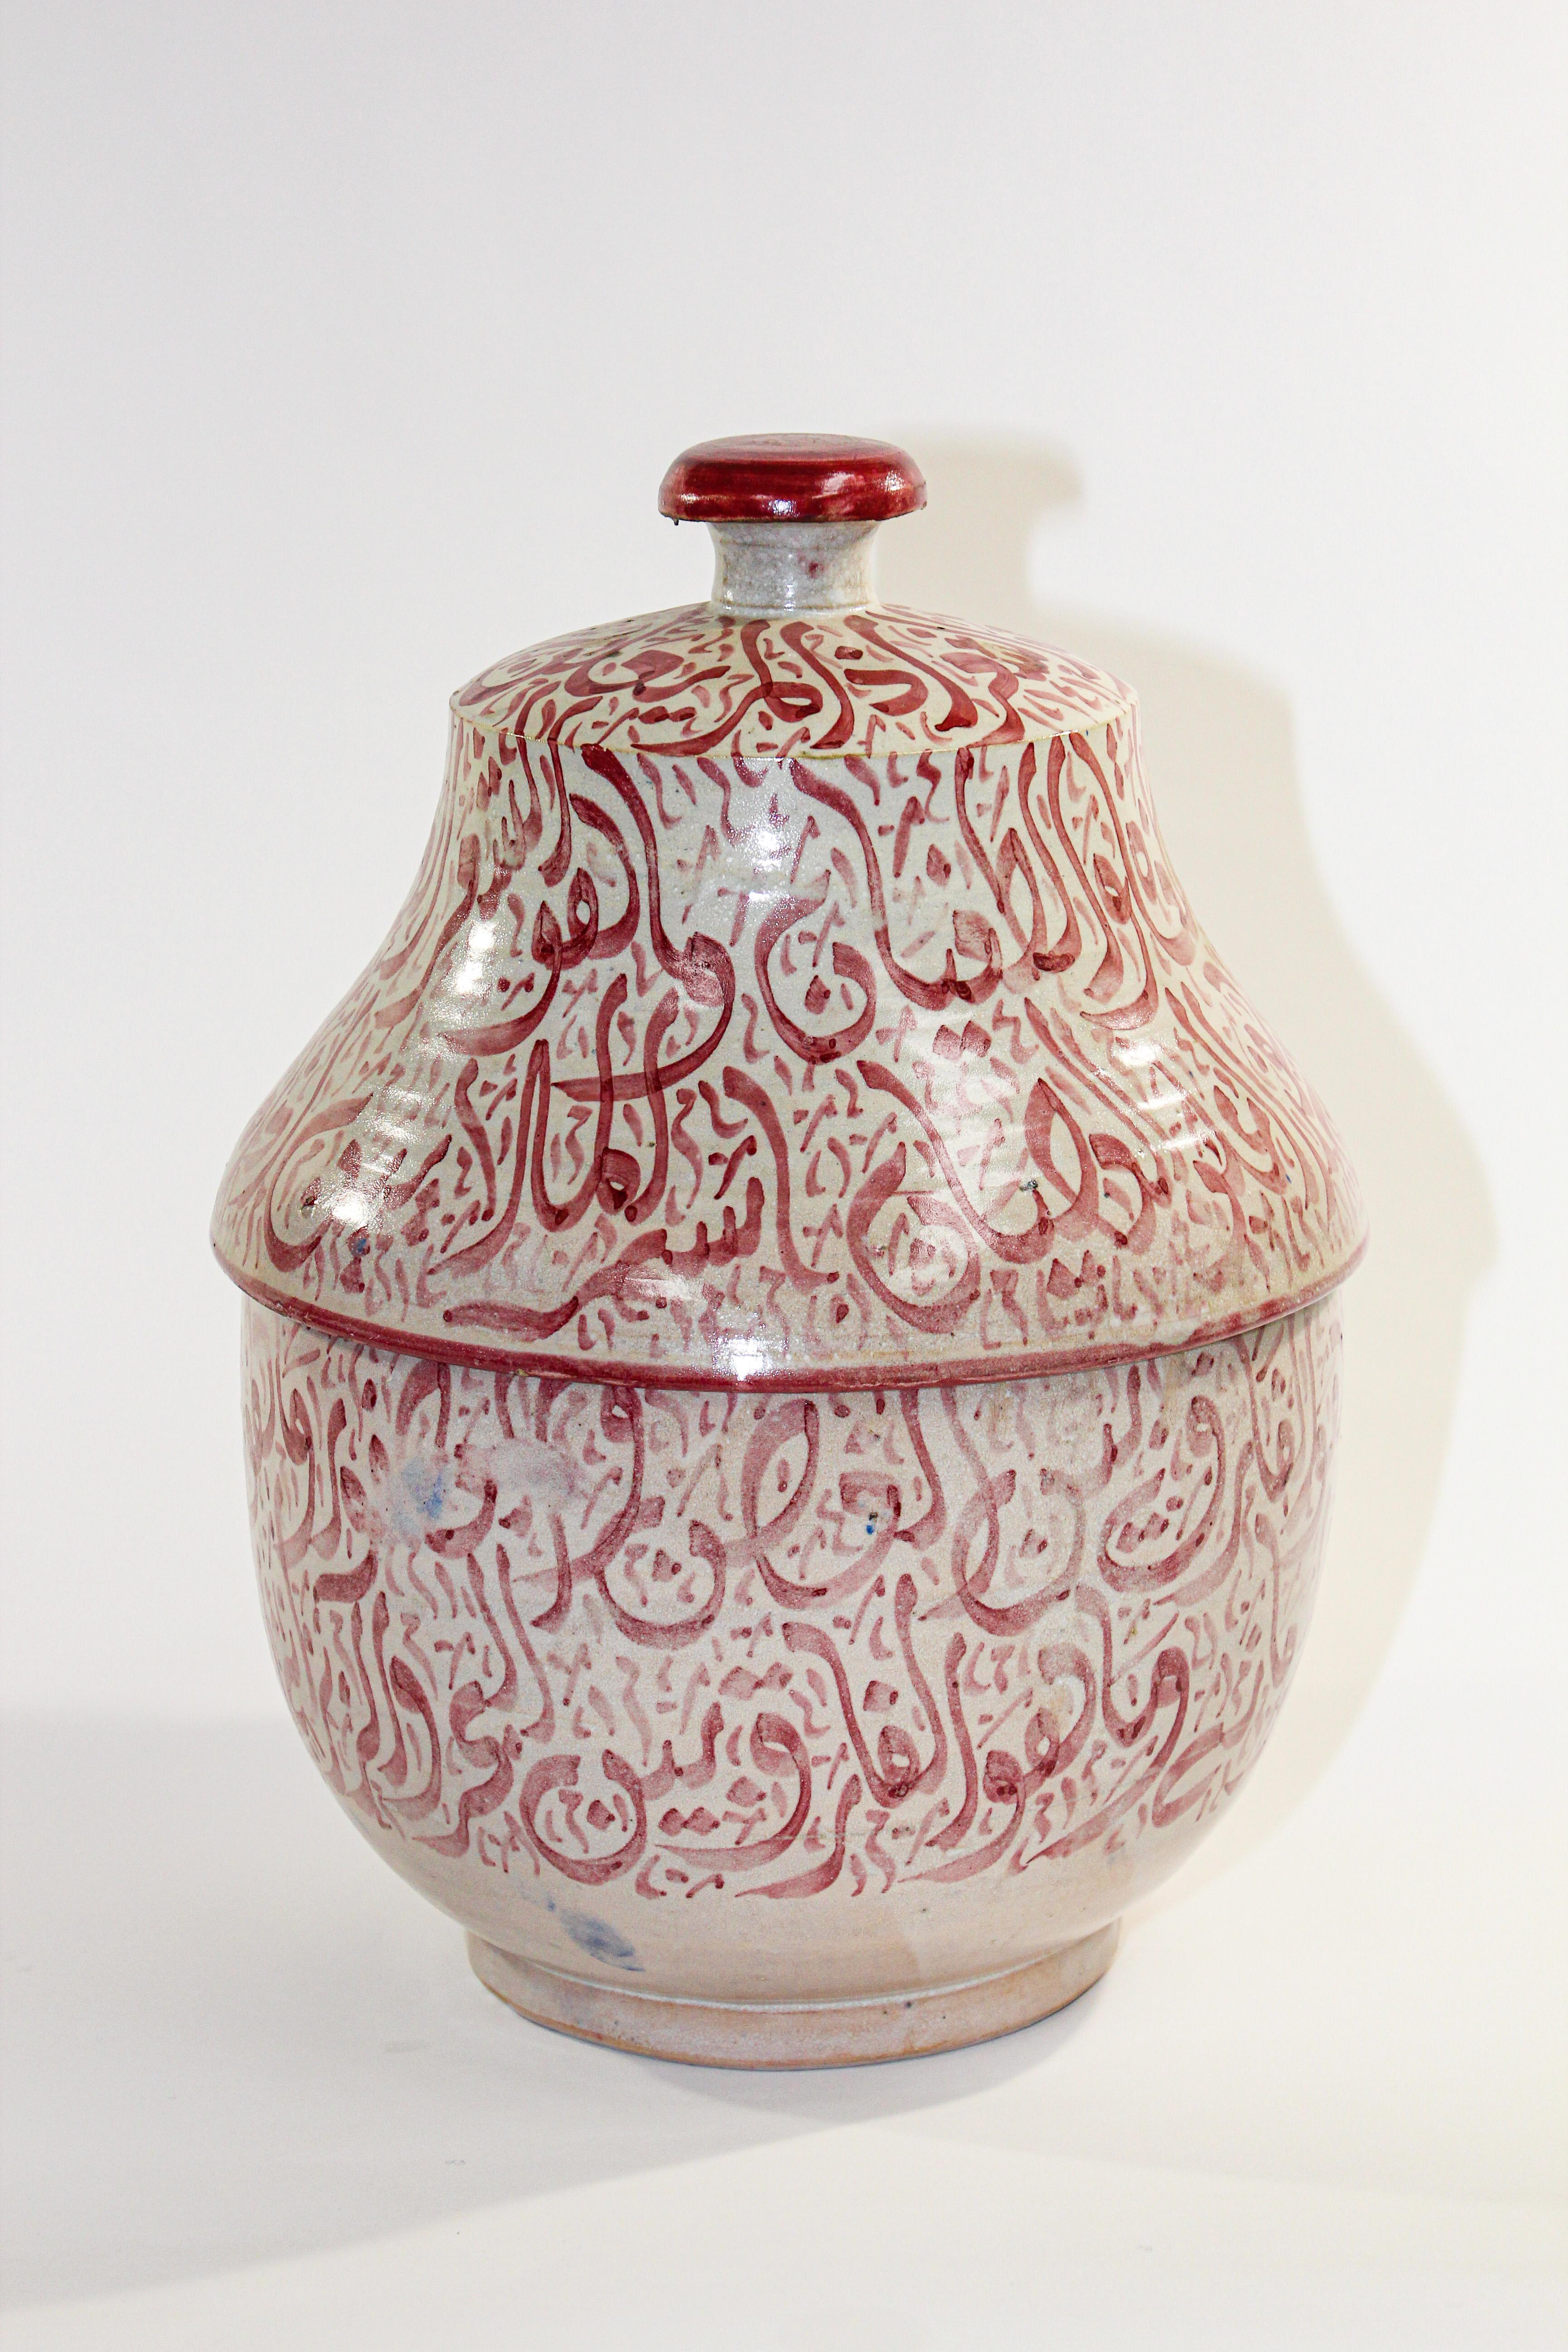 Marokkanische glasierte Keramikurne mit Deckel aus Fez. 
Keramik im maurischen Stil, handgefertigt und handbemalt mit arabischer Kalligrafie in rosa Schrift.
Diese Art von Schrift, die kalligraphisch aussieht, nennt man Lettrismus, eine Kunstform,